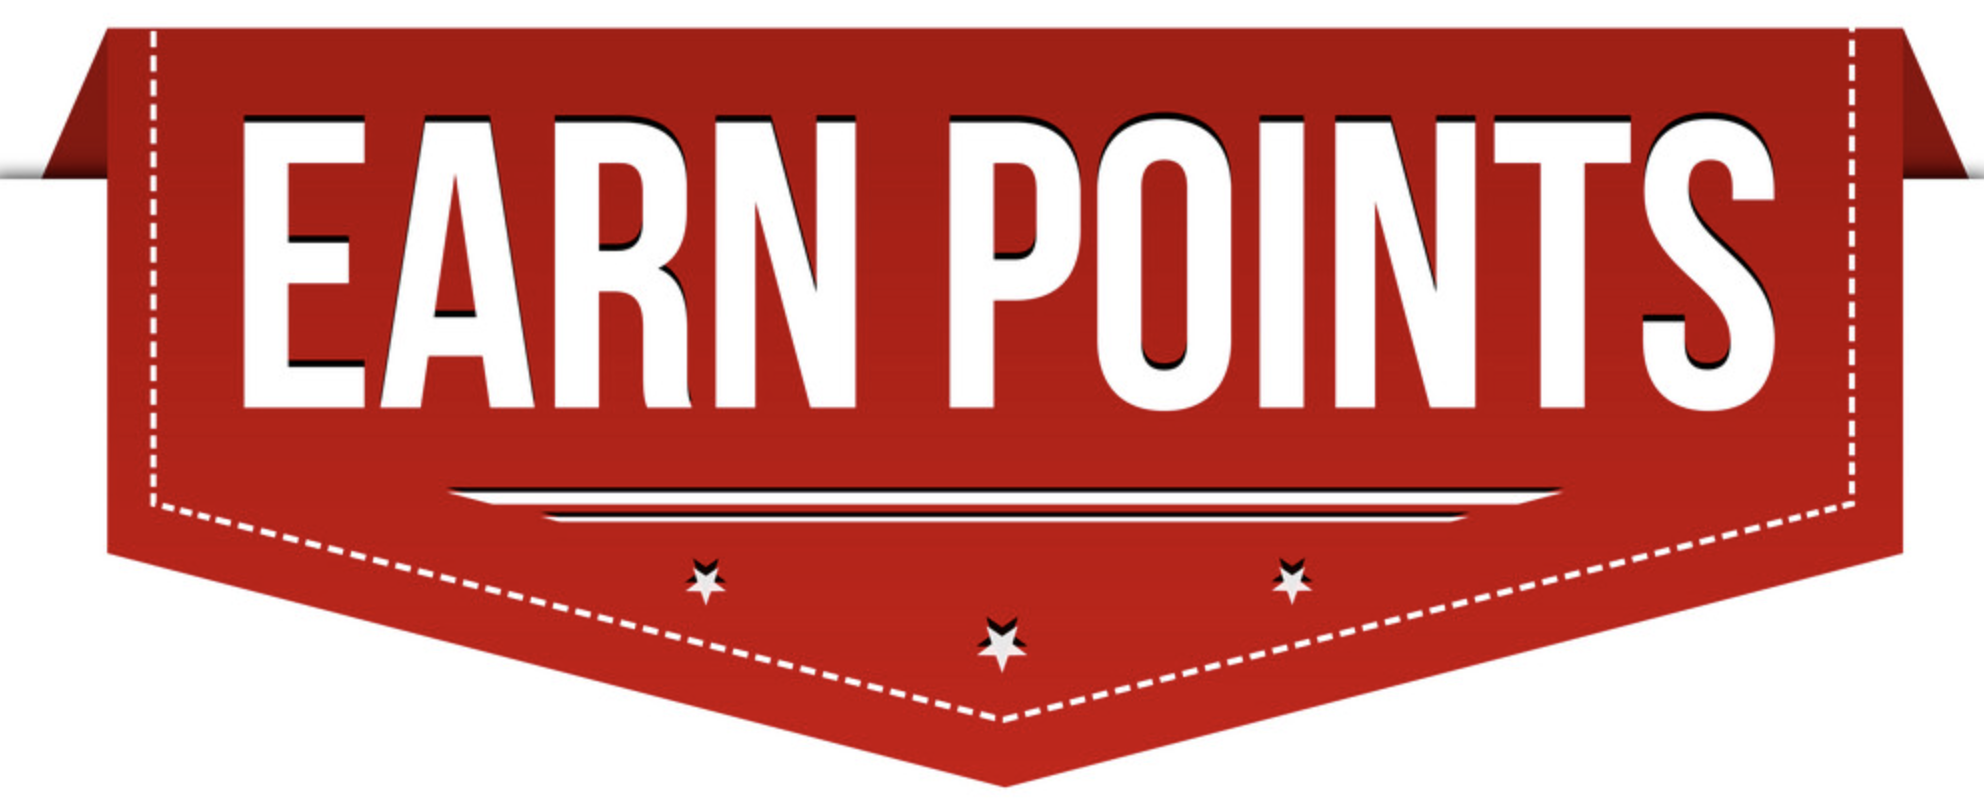 Earn Point